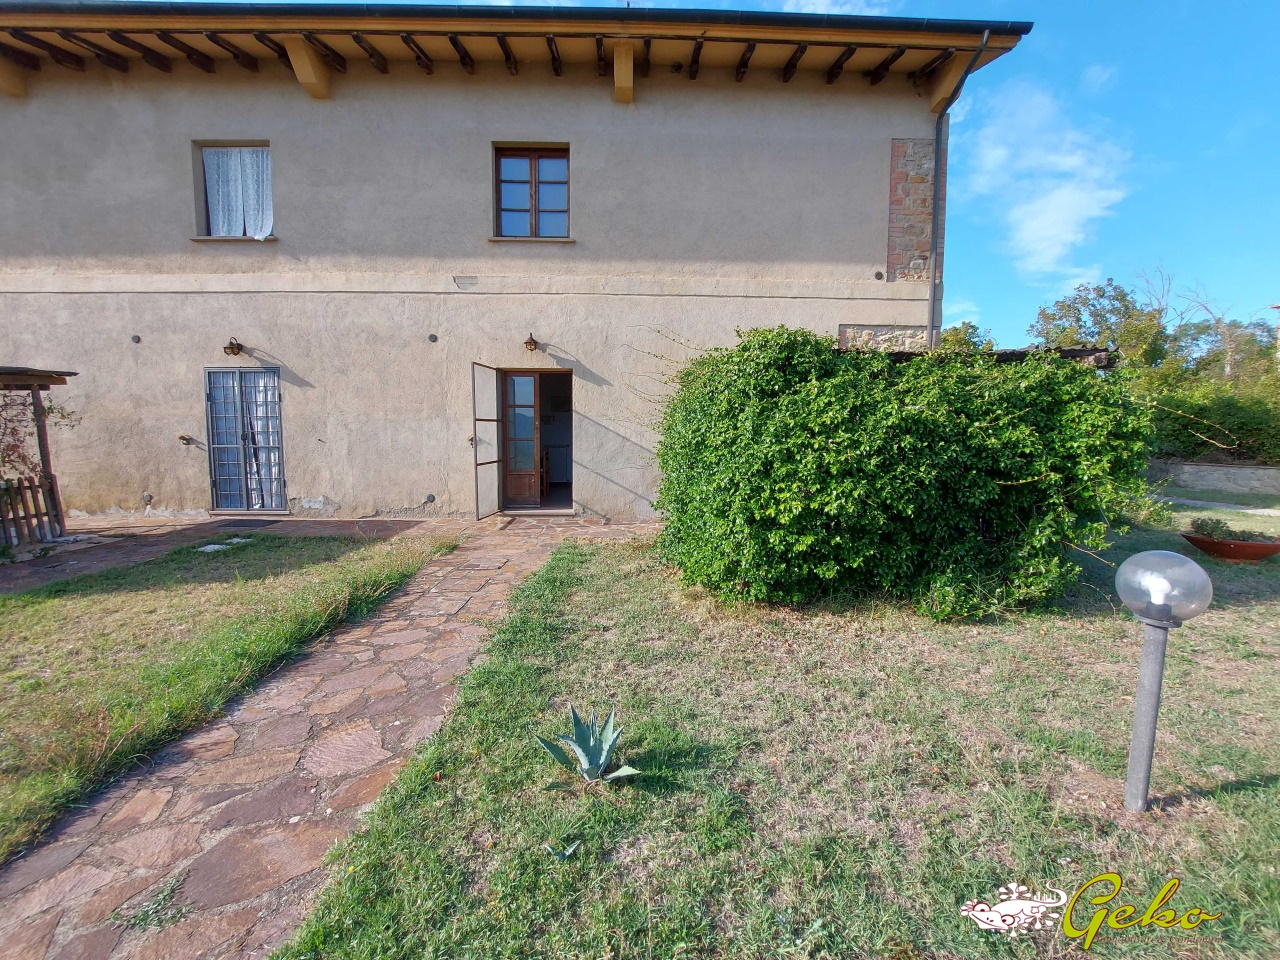 Villa in vendita a Volterra, 2 locali, prezzo € 84.000 | PortaleAgenzieImmobiliari.it